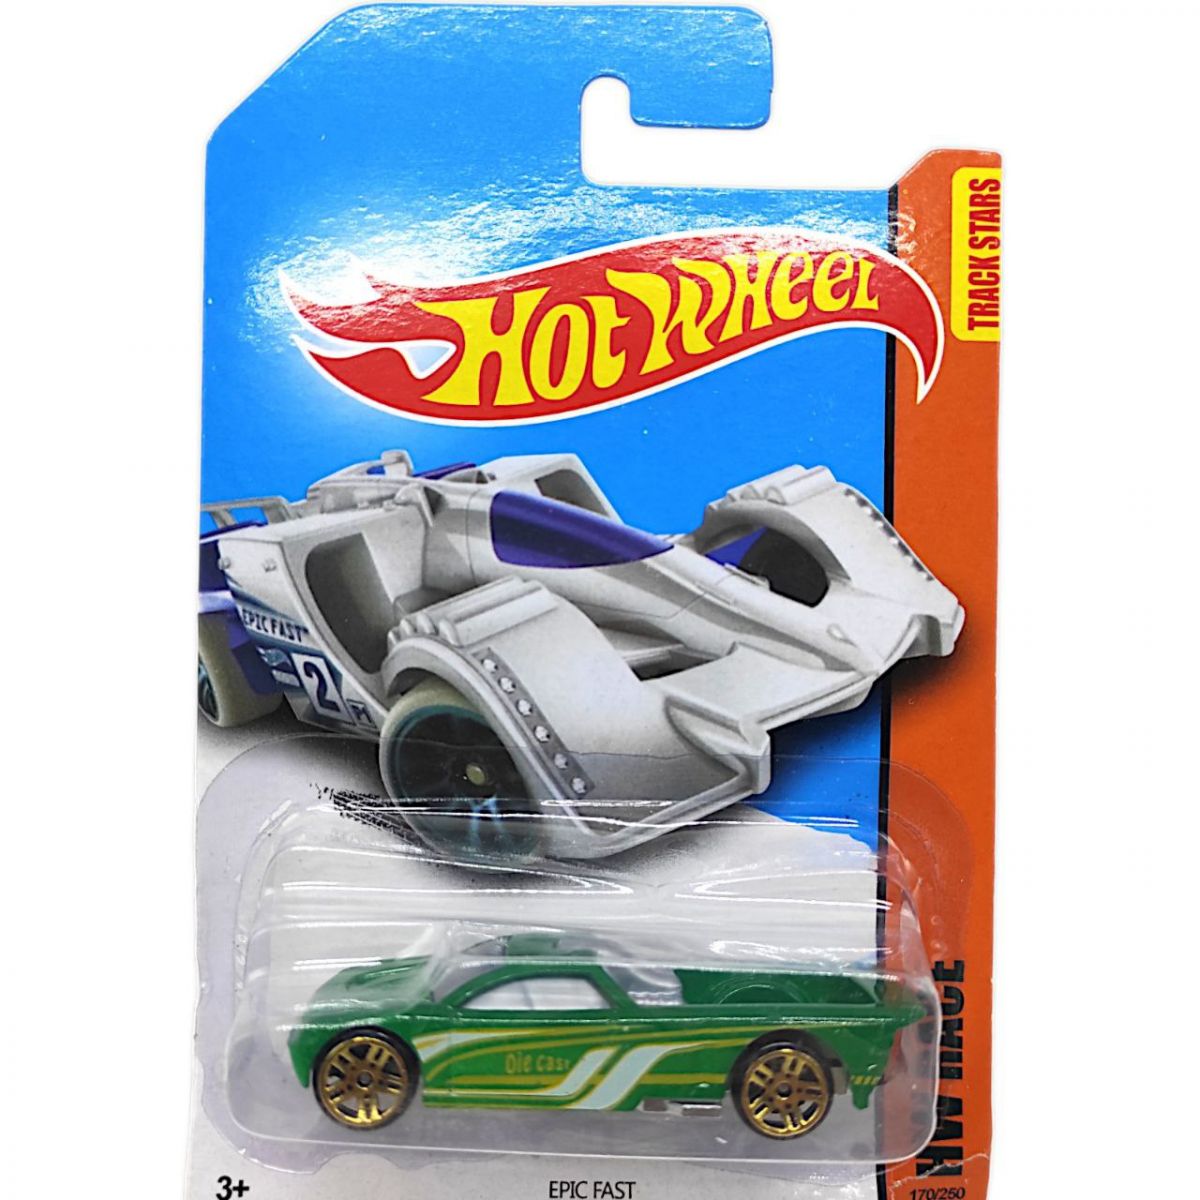 Машинка пластикова "Hot CARS" (зелений)